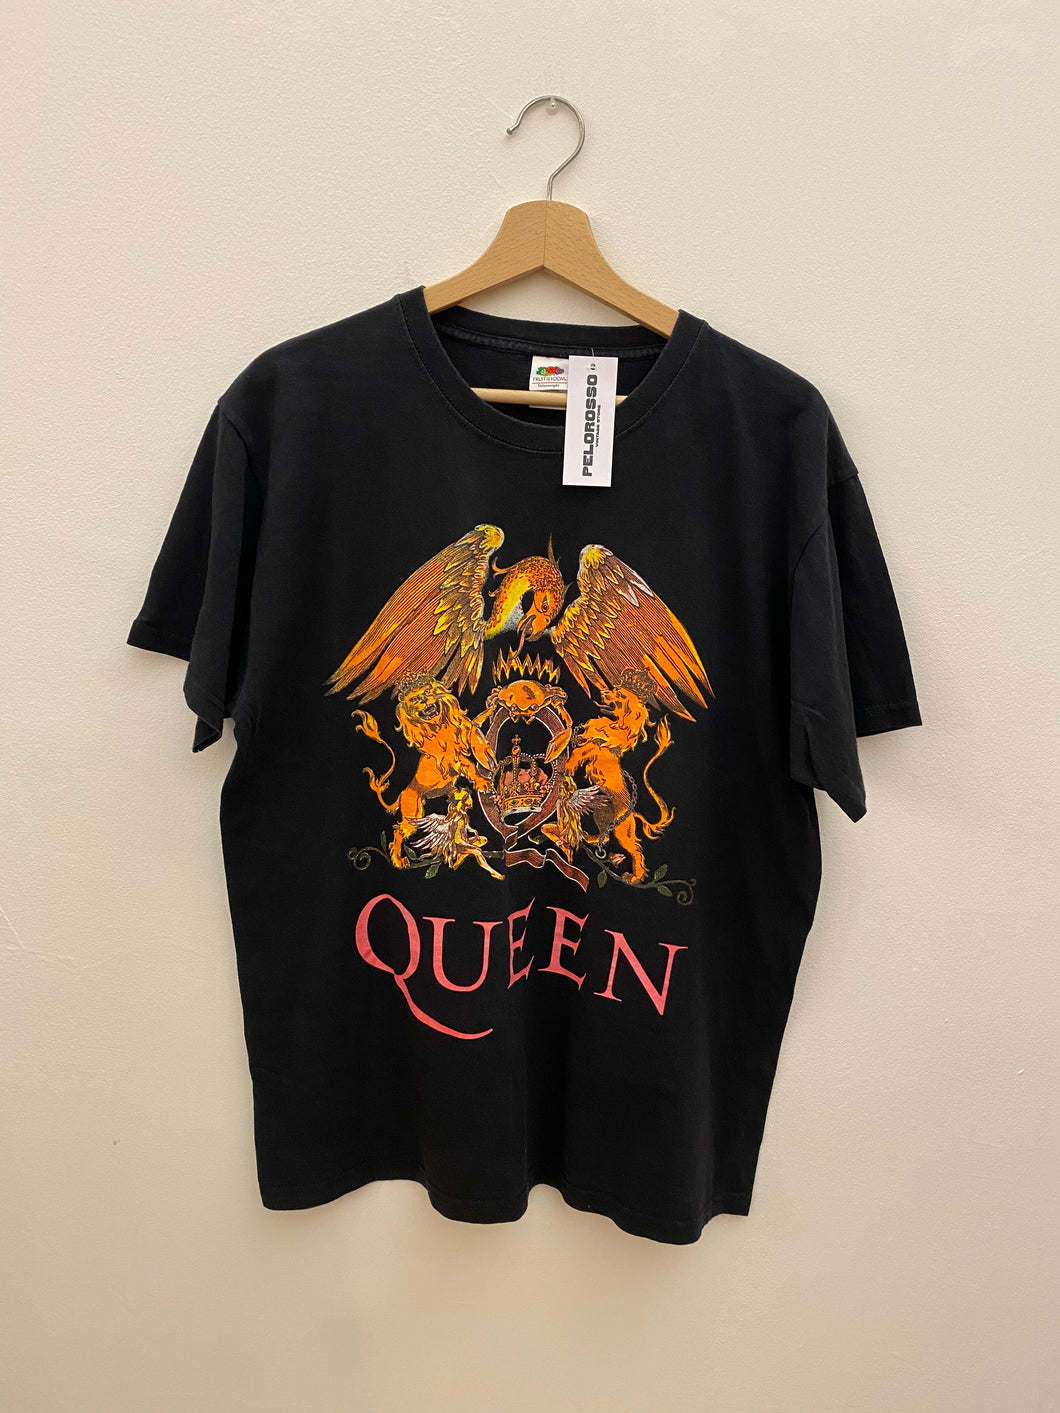 T-shirt Queen vintage tg. L